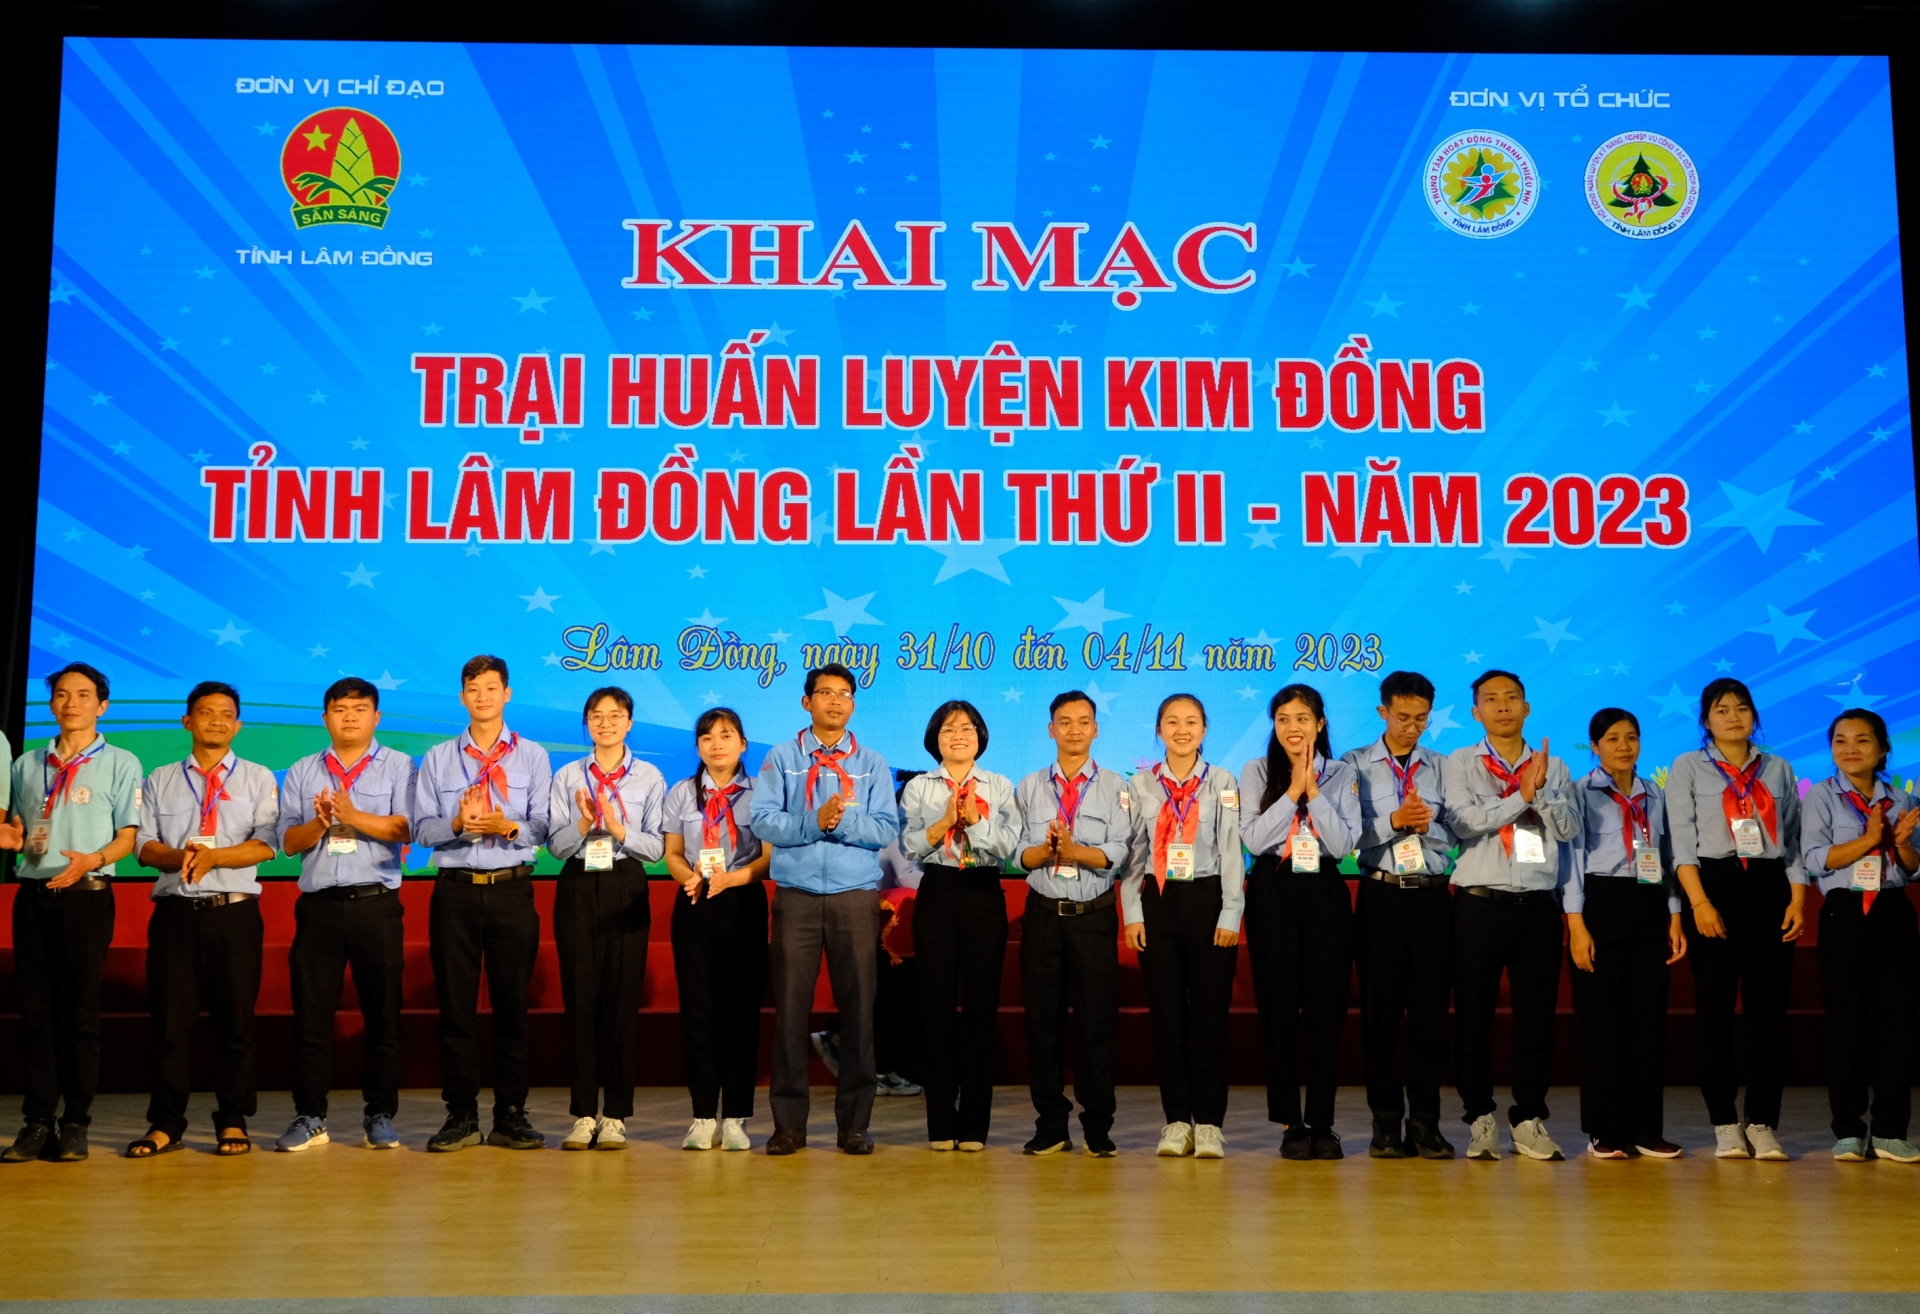 Trao thẻ trại sinh cho các thành viên tham gia Trại Huấn luyện Kim Đồng